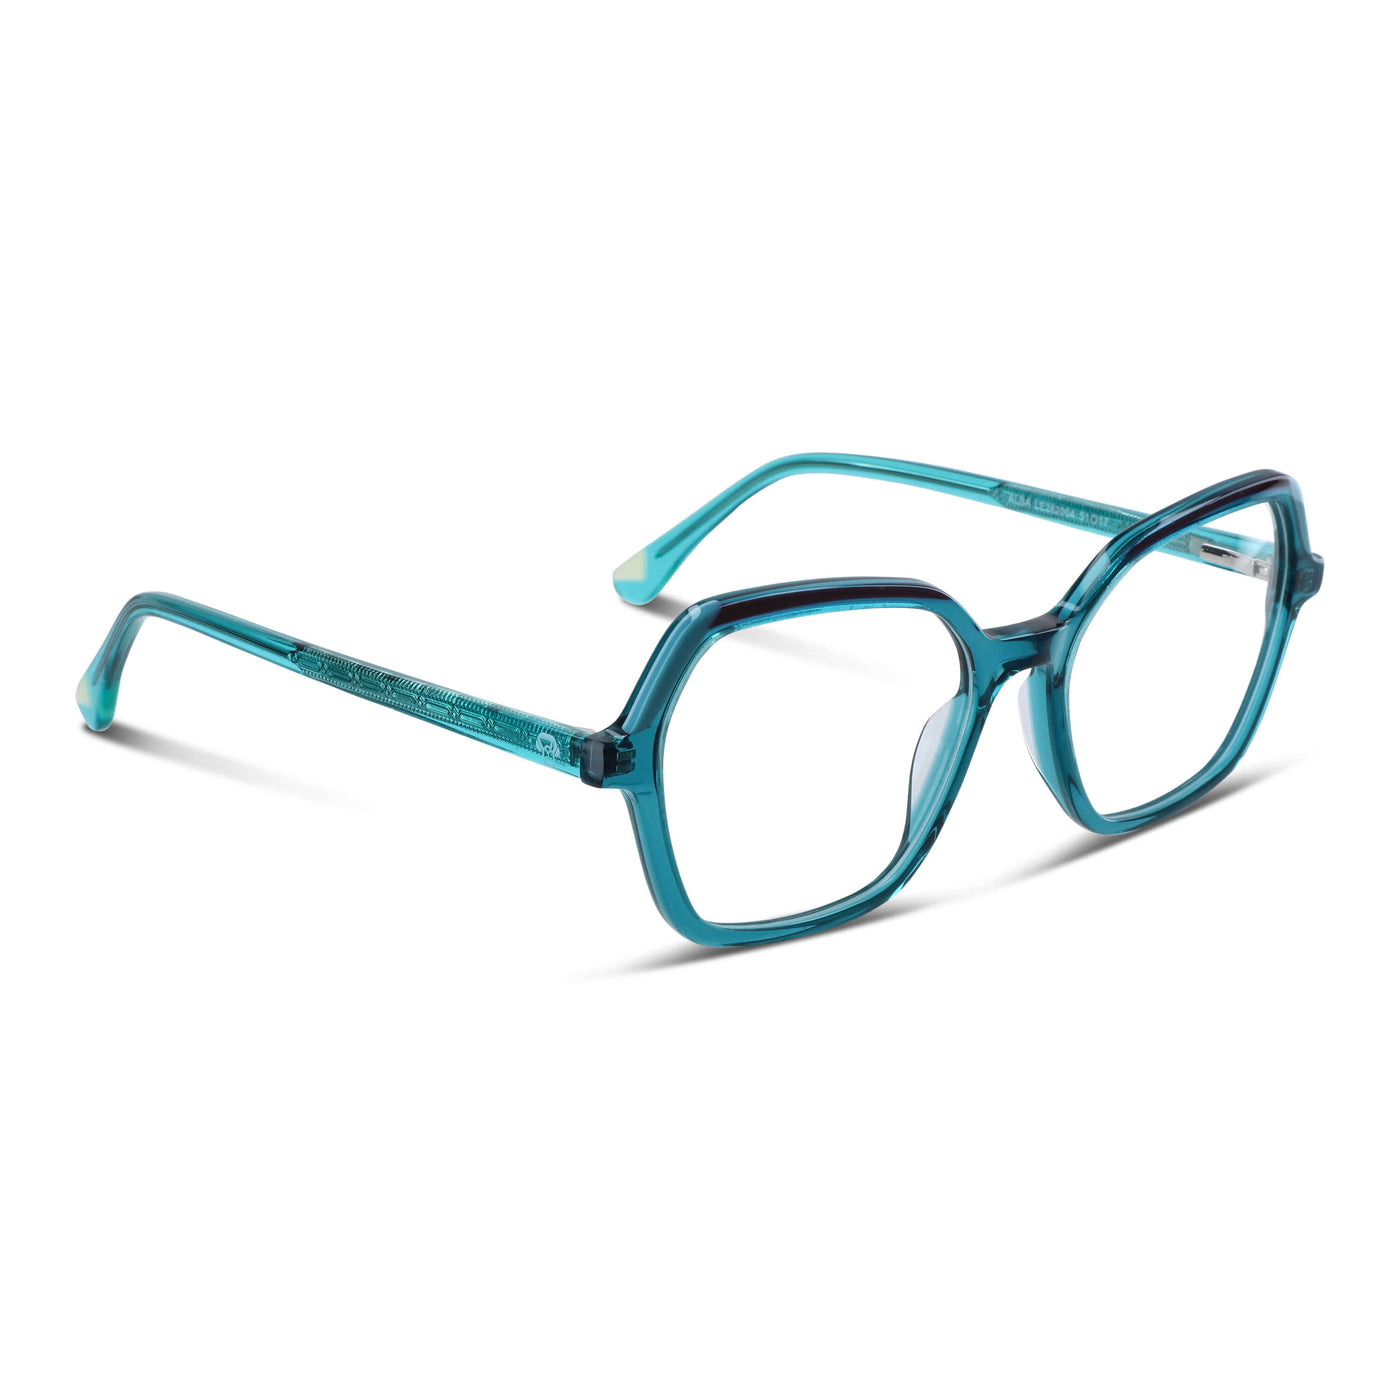  lentes opticos cuadrados verde mujer cara redonda receta multifocal bifocal adelgazado filtro azul..jpg